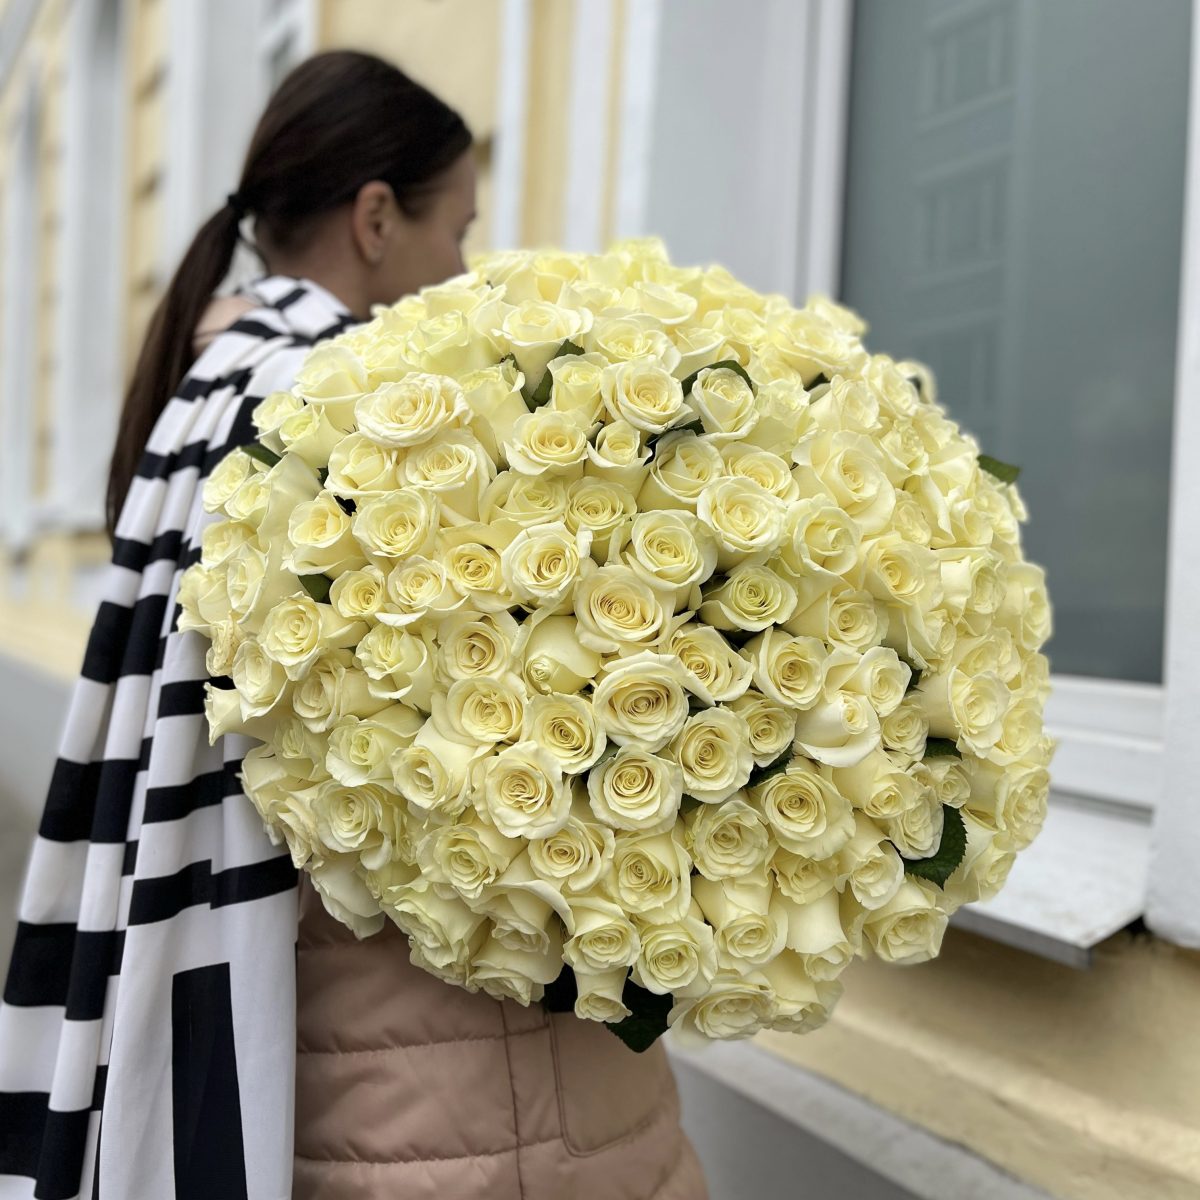 Купить букет из 151 белой розы 70 см по доступной цене с доставкой в Москве и области в интернет-магазине Город Букетов